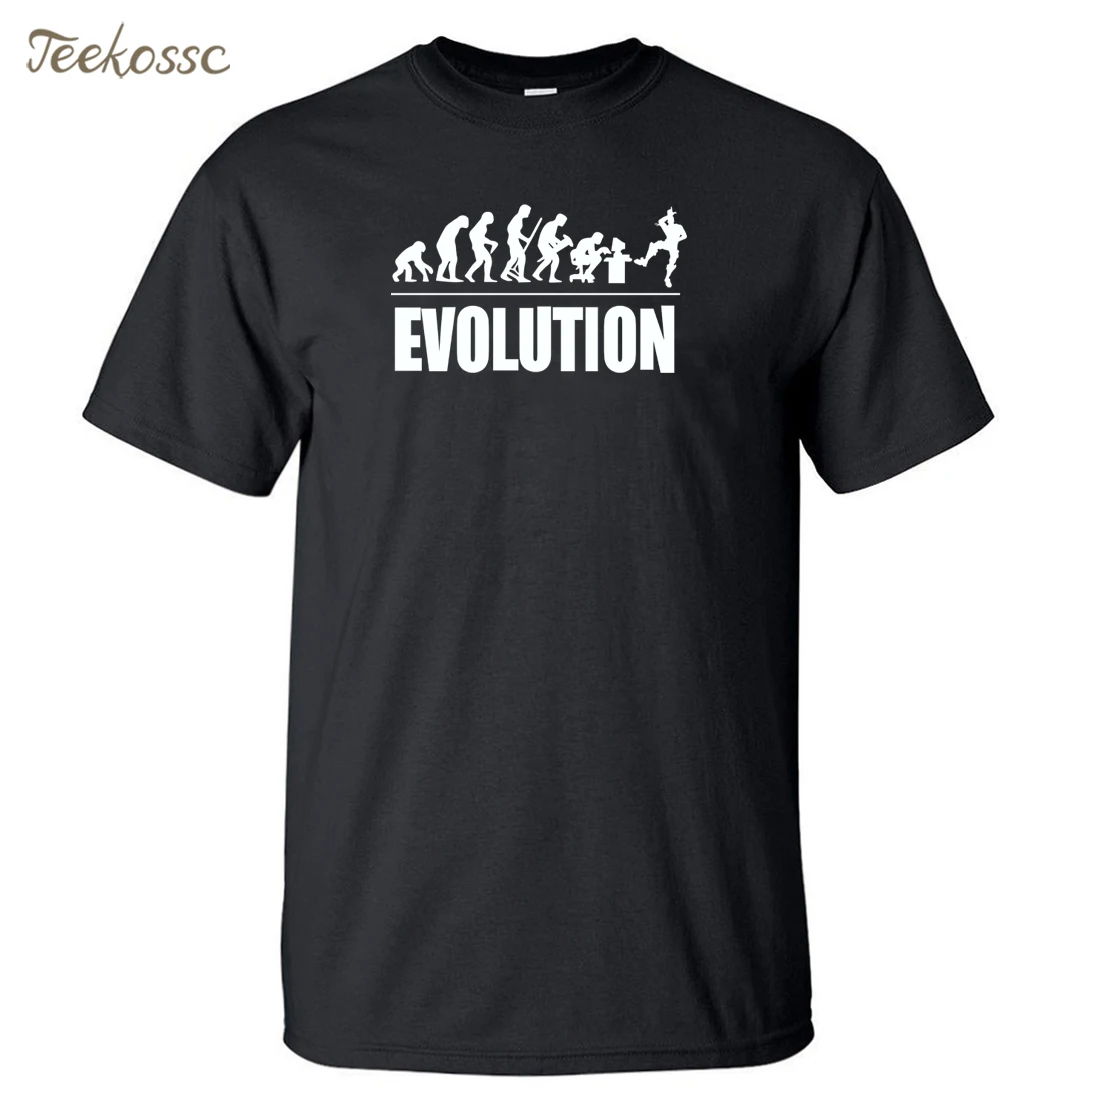 Мужская футболка с надписью Evolution Виктории рояль Новинка лета 2018 | одежда